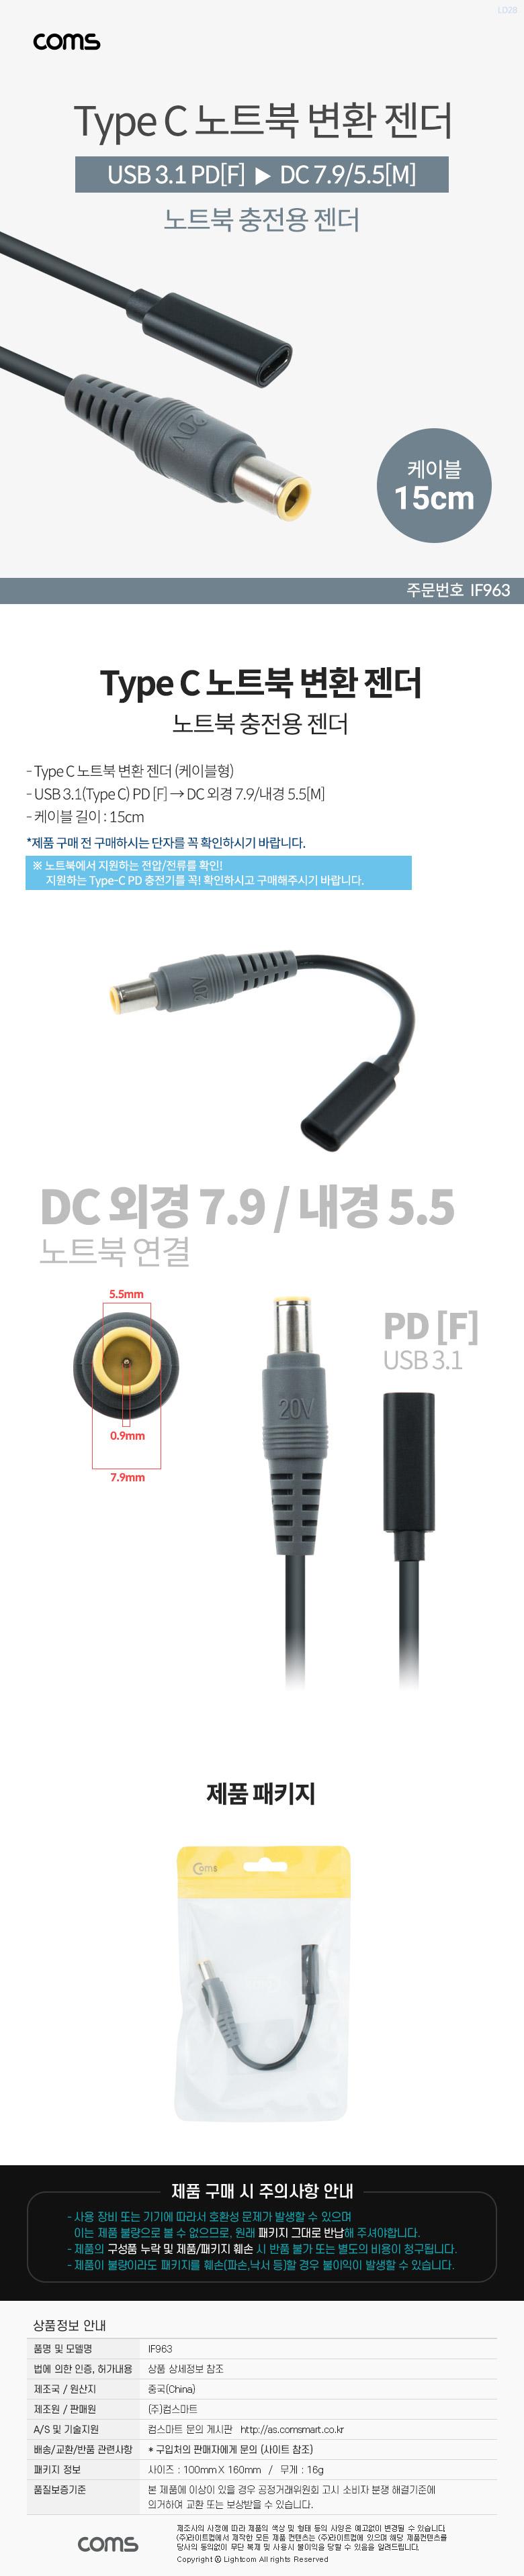 Coms USB 3.1 Type C Ʈ ȯ  ̺ 15cm CŸ PD to DC 7.9 5.5 Ʈ  Ʈ   Ʈ Ʈ ȯ ƮϺȯ ȯ